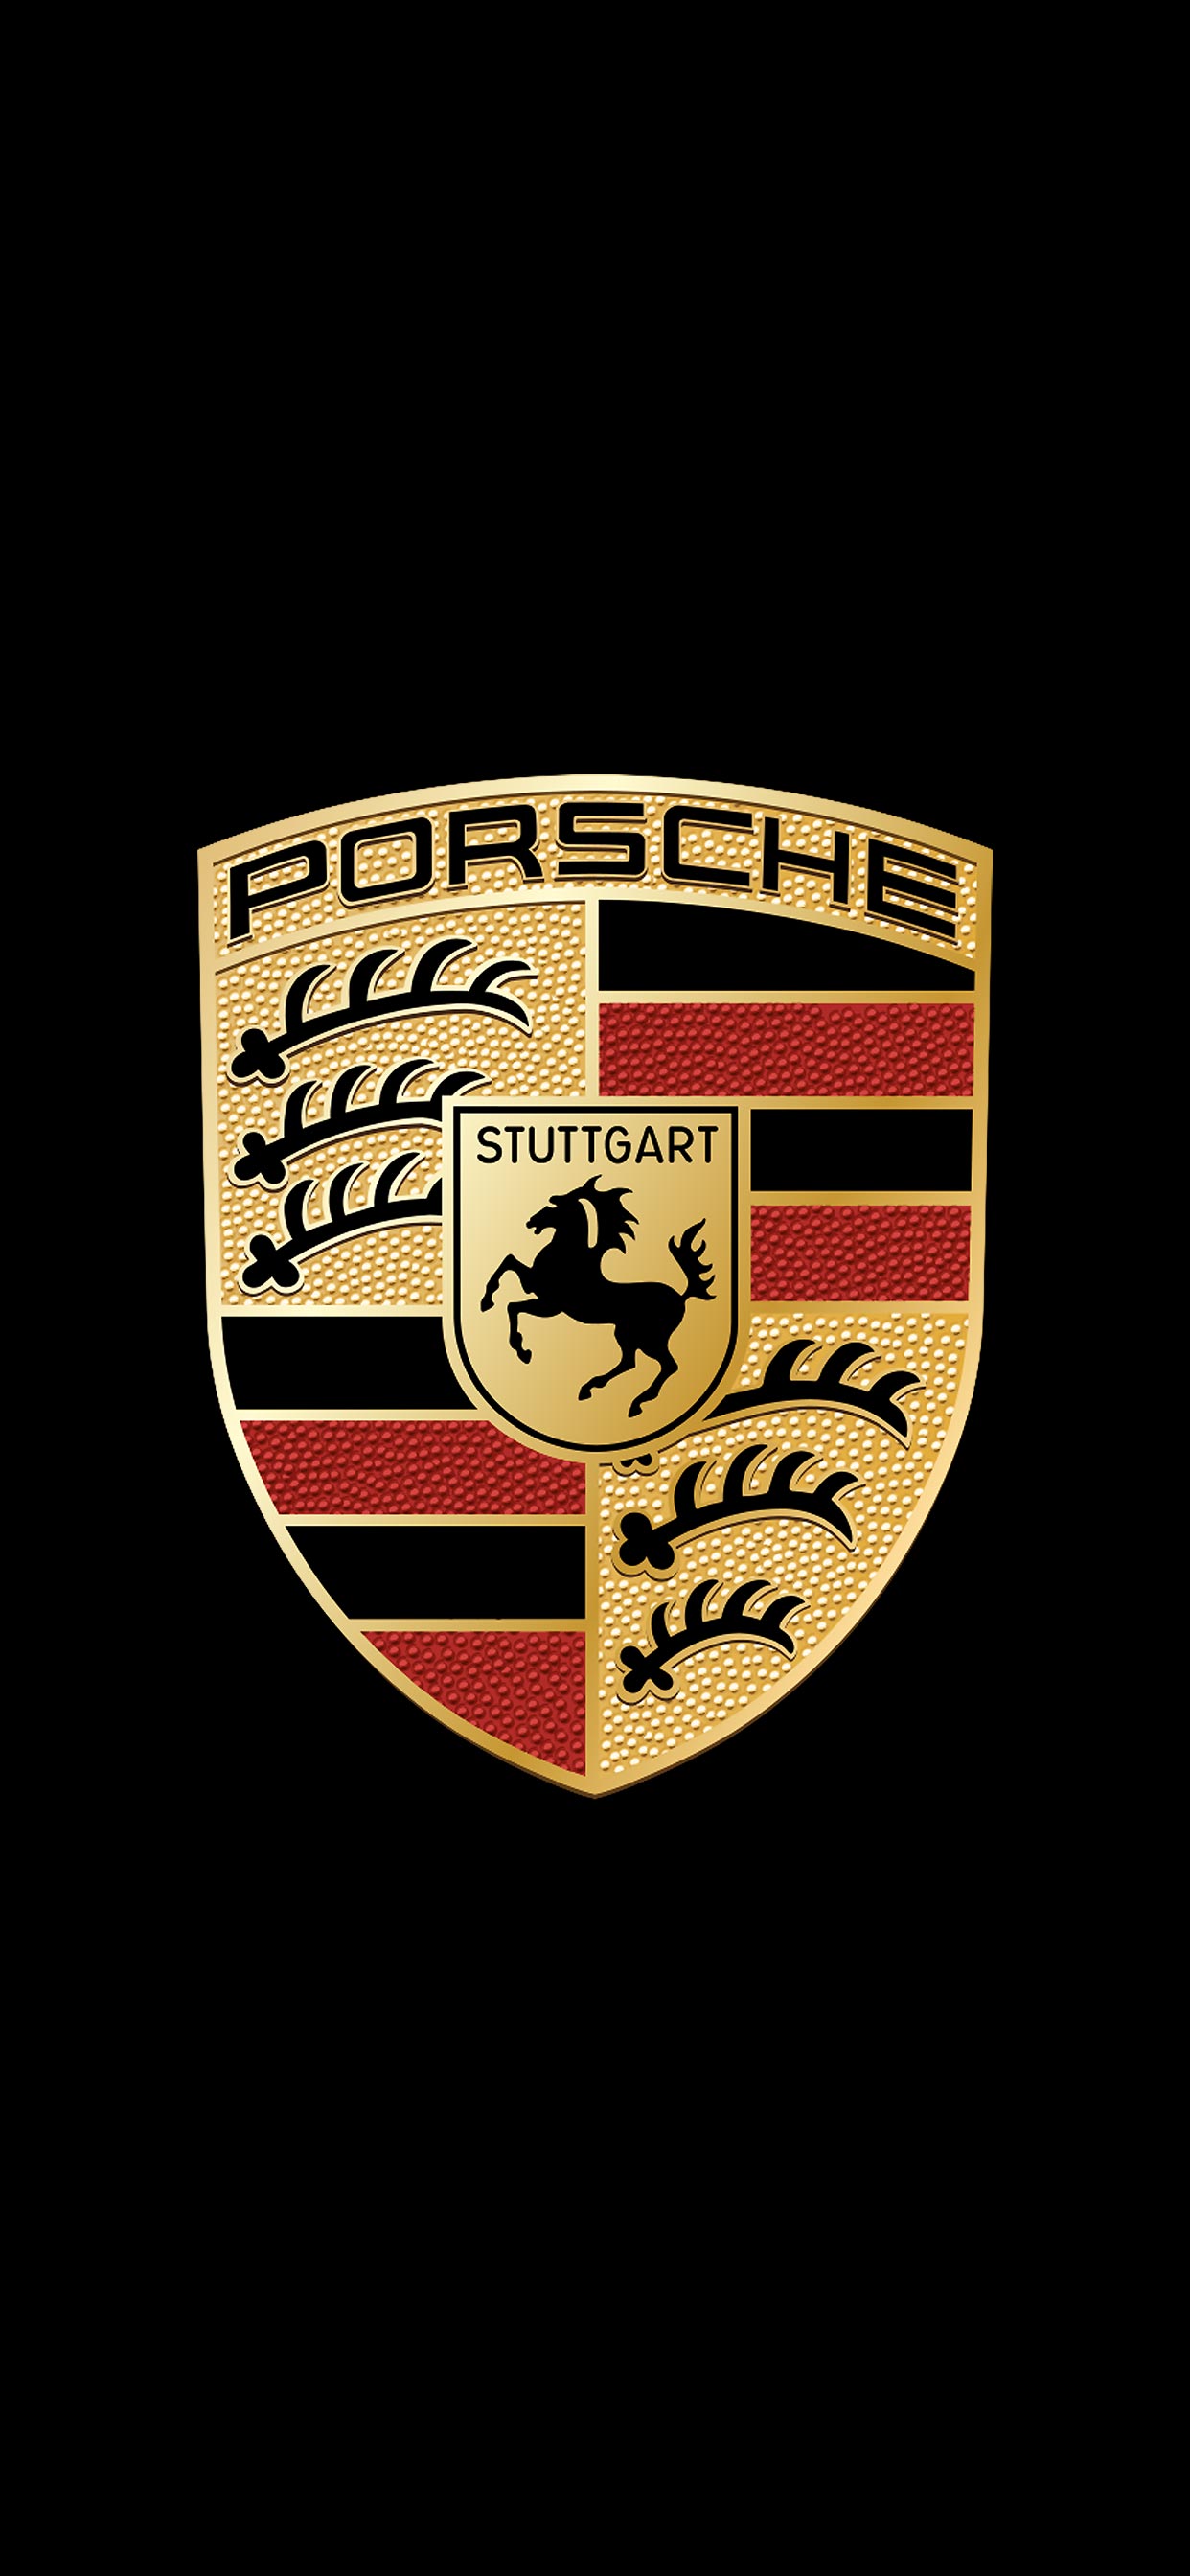 ポルシェ Porsche ロゴ の無料待ち受け画像 スマホ壁紙 Iphone Android 1 待ち受けparadise